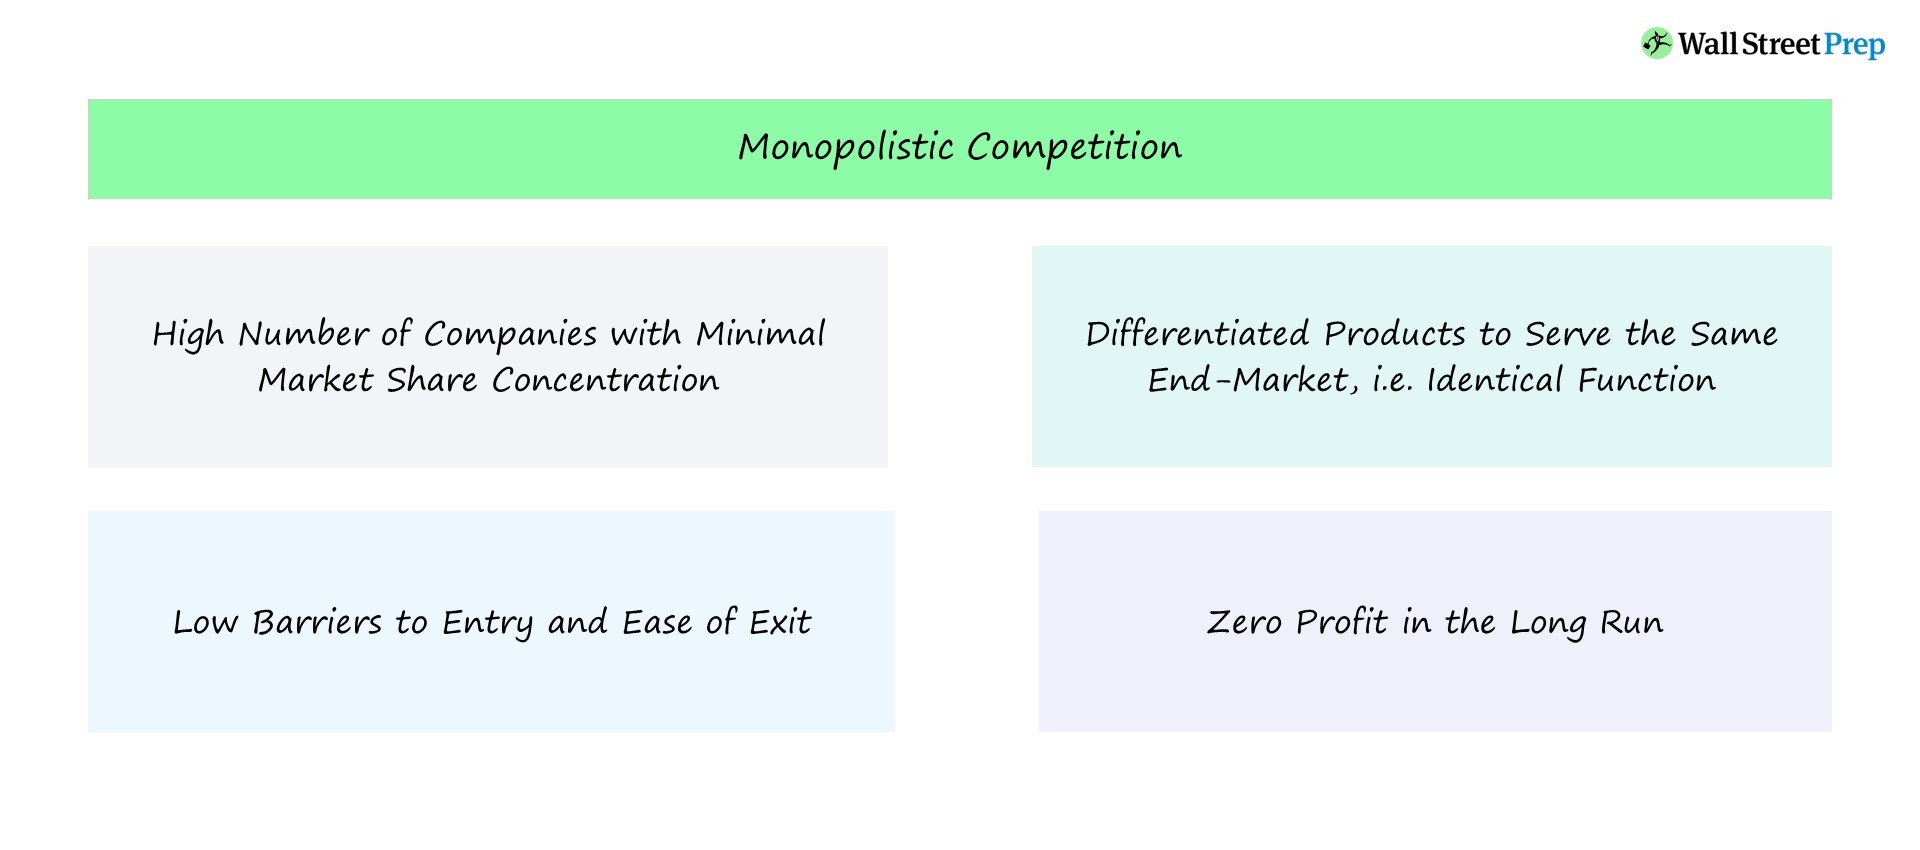 Competencia monopolística | Definición económica + ejemplos